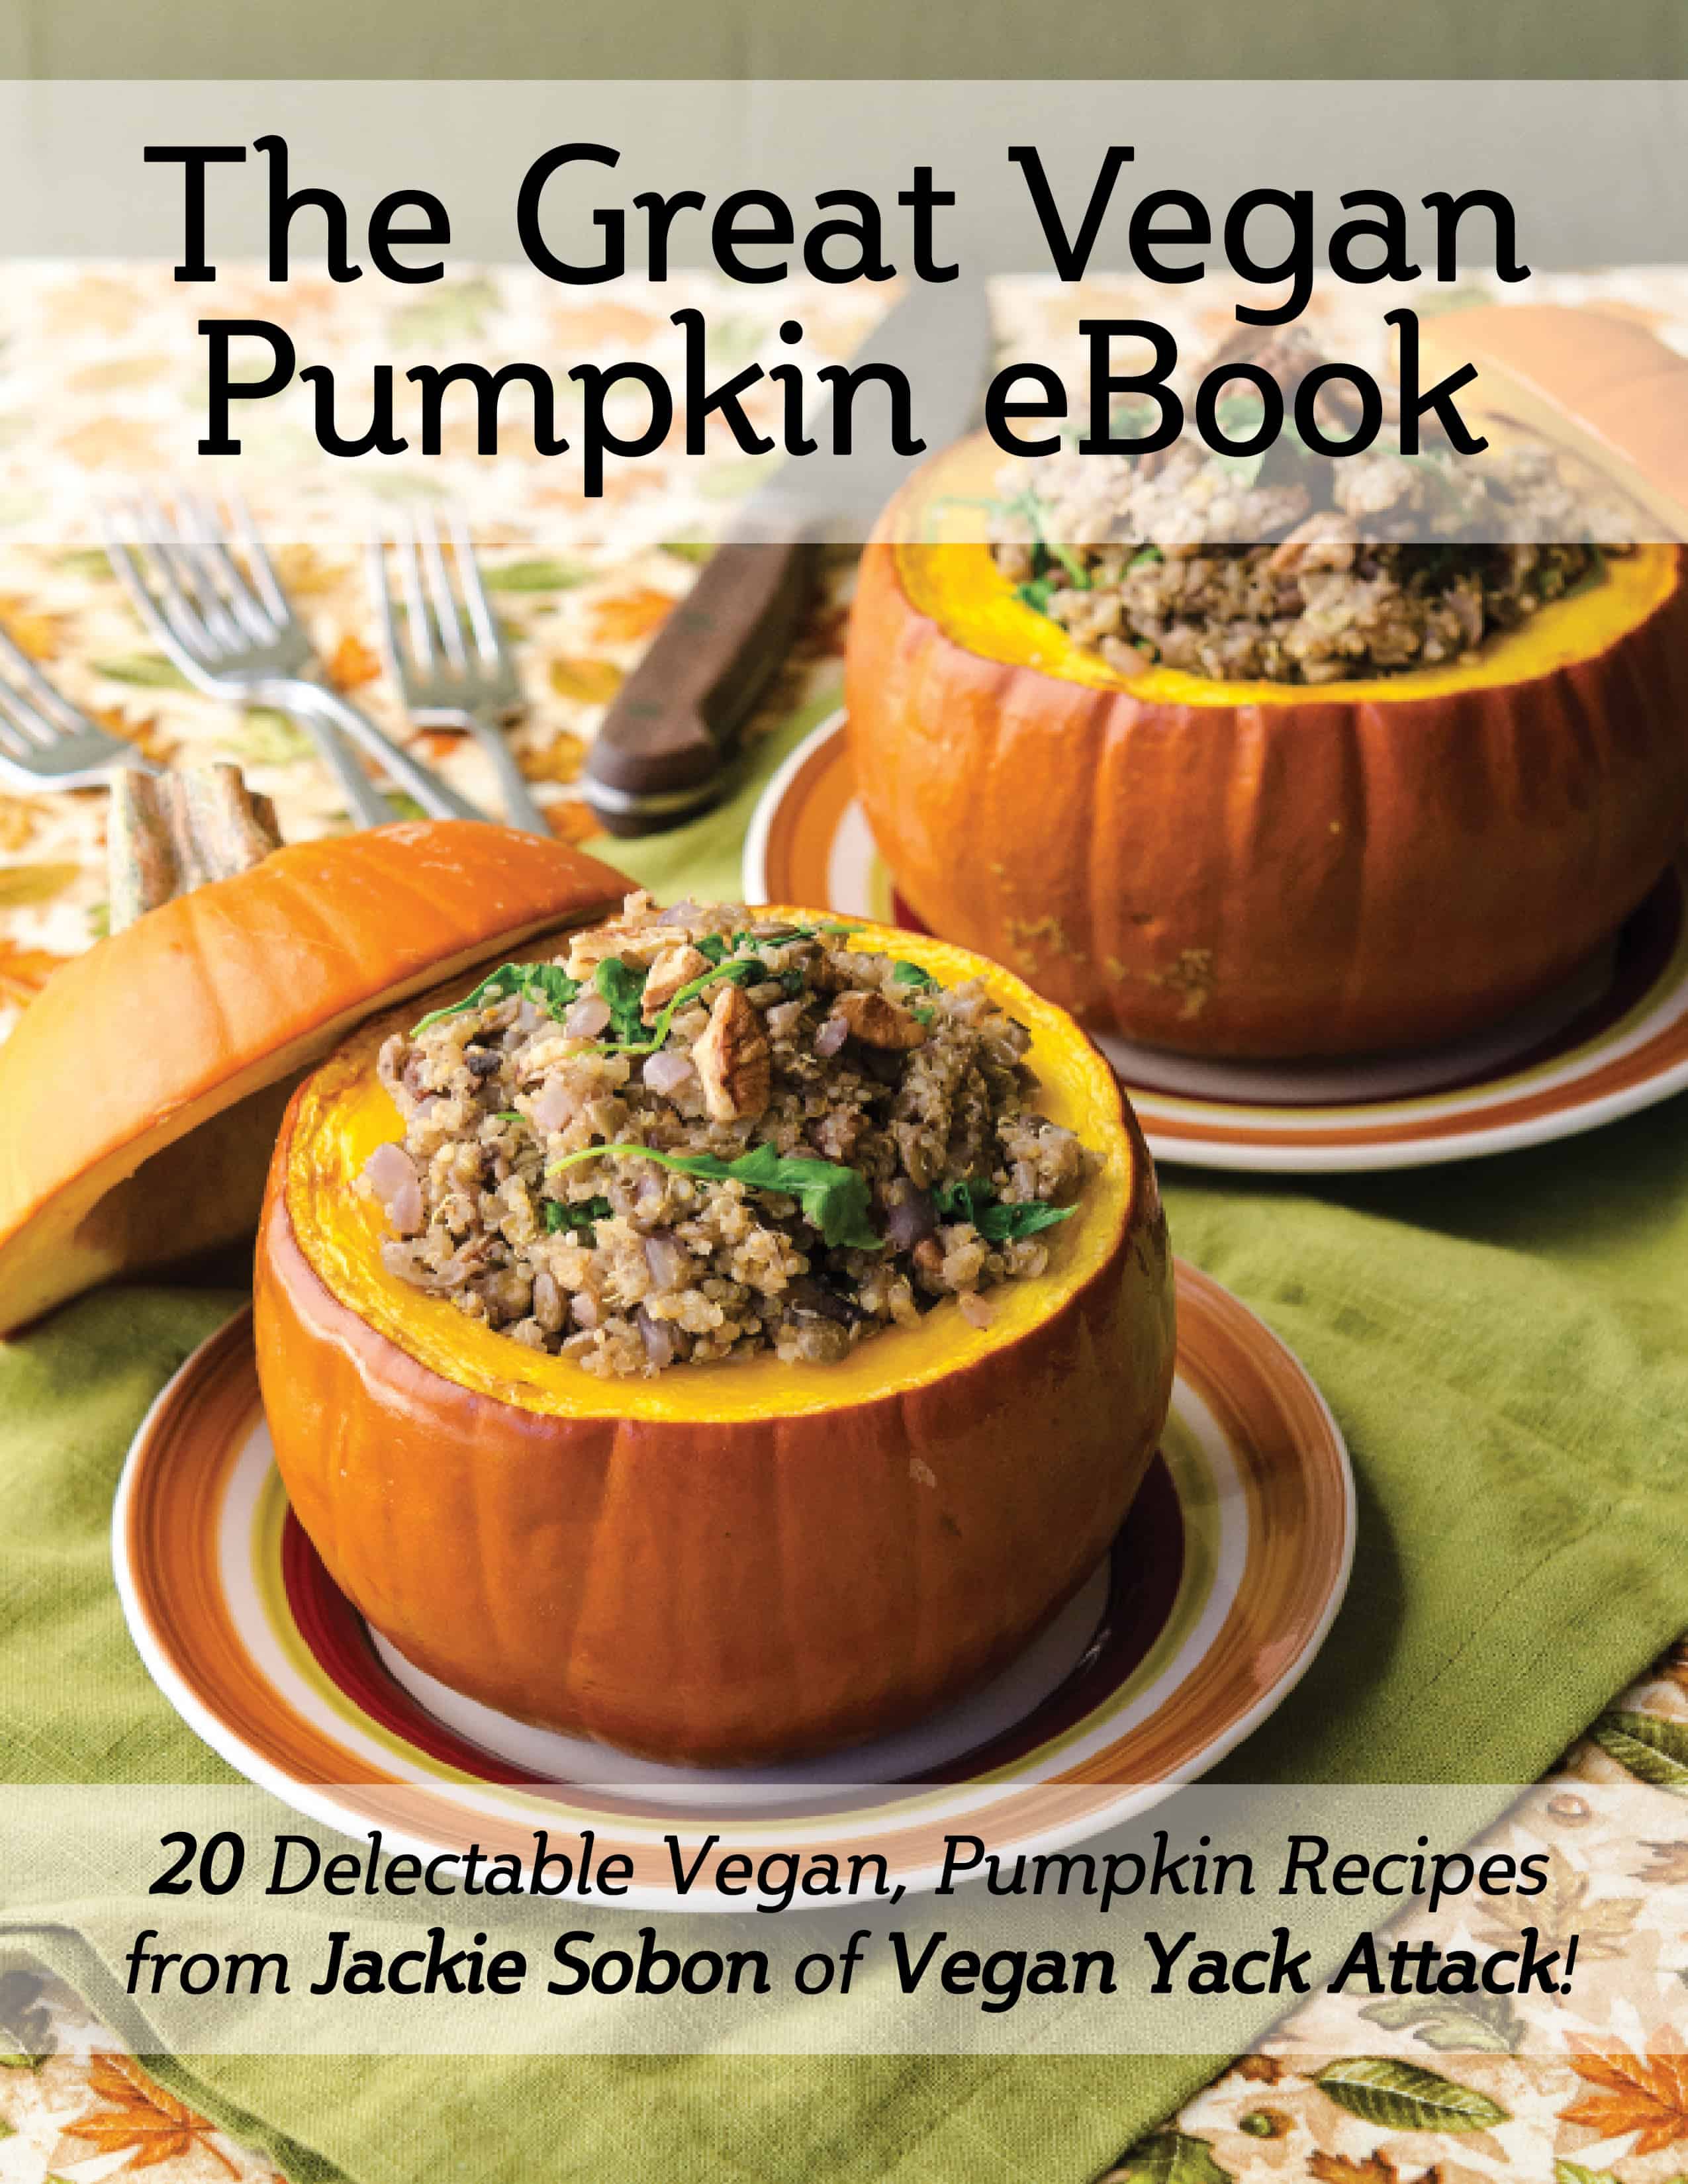 The Great Vegan Pumpkin eBook by Jackie Sobon